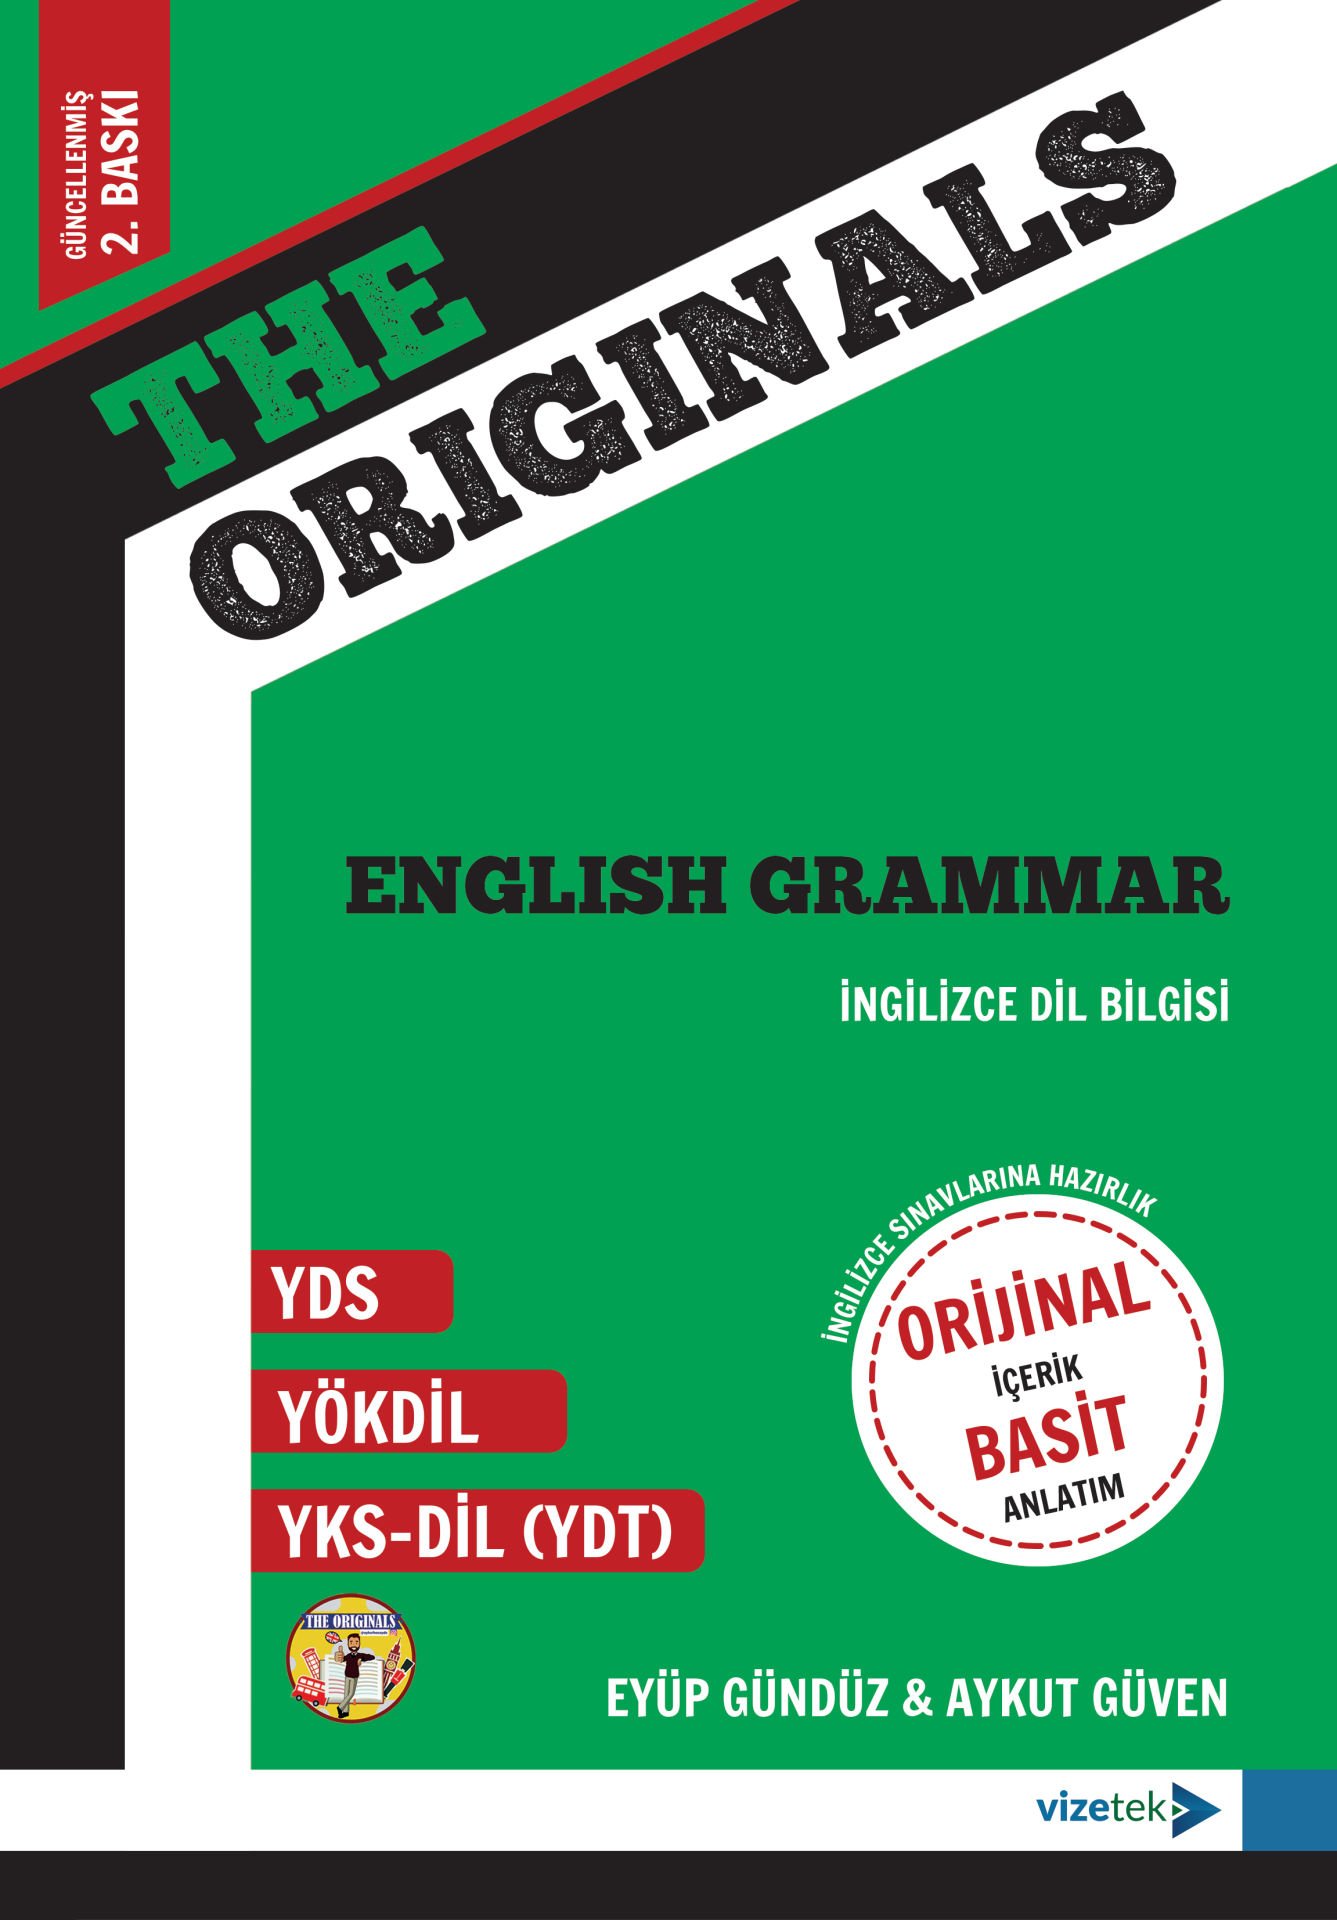 Vizetek The Originals English Grammar, İngilizce Dil Bilgisi Vizetek Yayıncılık